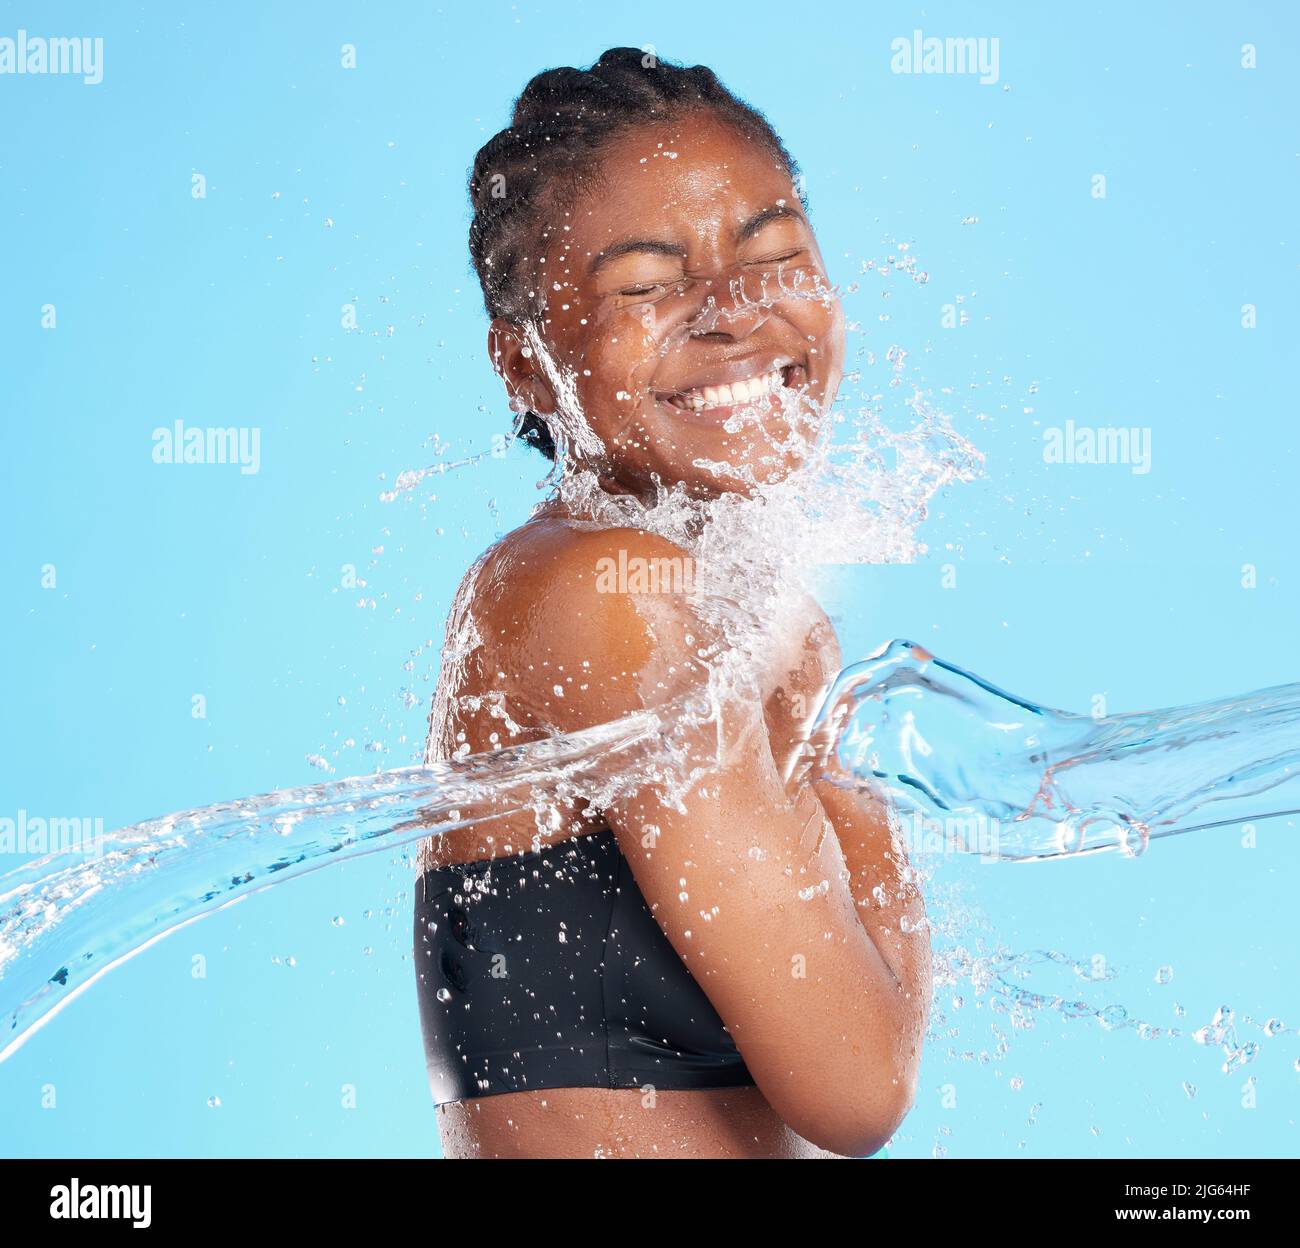 Son sourire est le soleil. Photo d'une belle jeune femme éclaboussé avec de l'eau sur un fond bleu. Banque D'Images